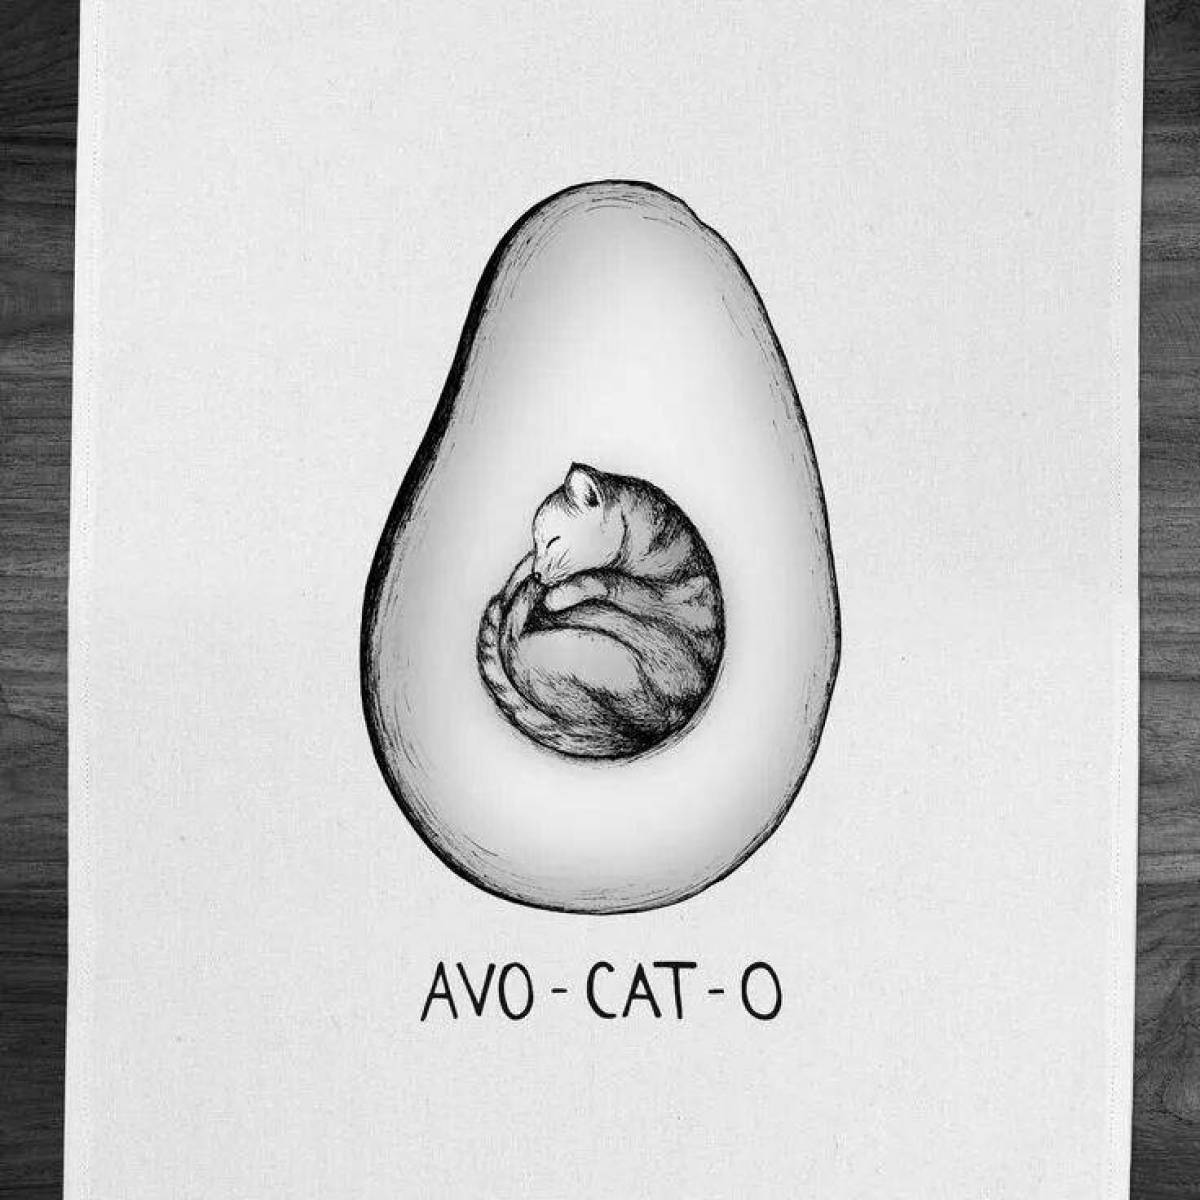 Rampant avocado cat coloring book